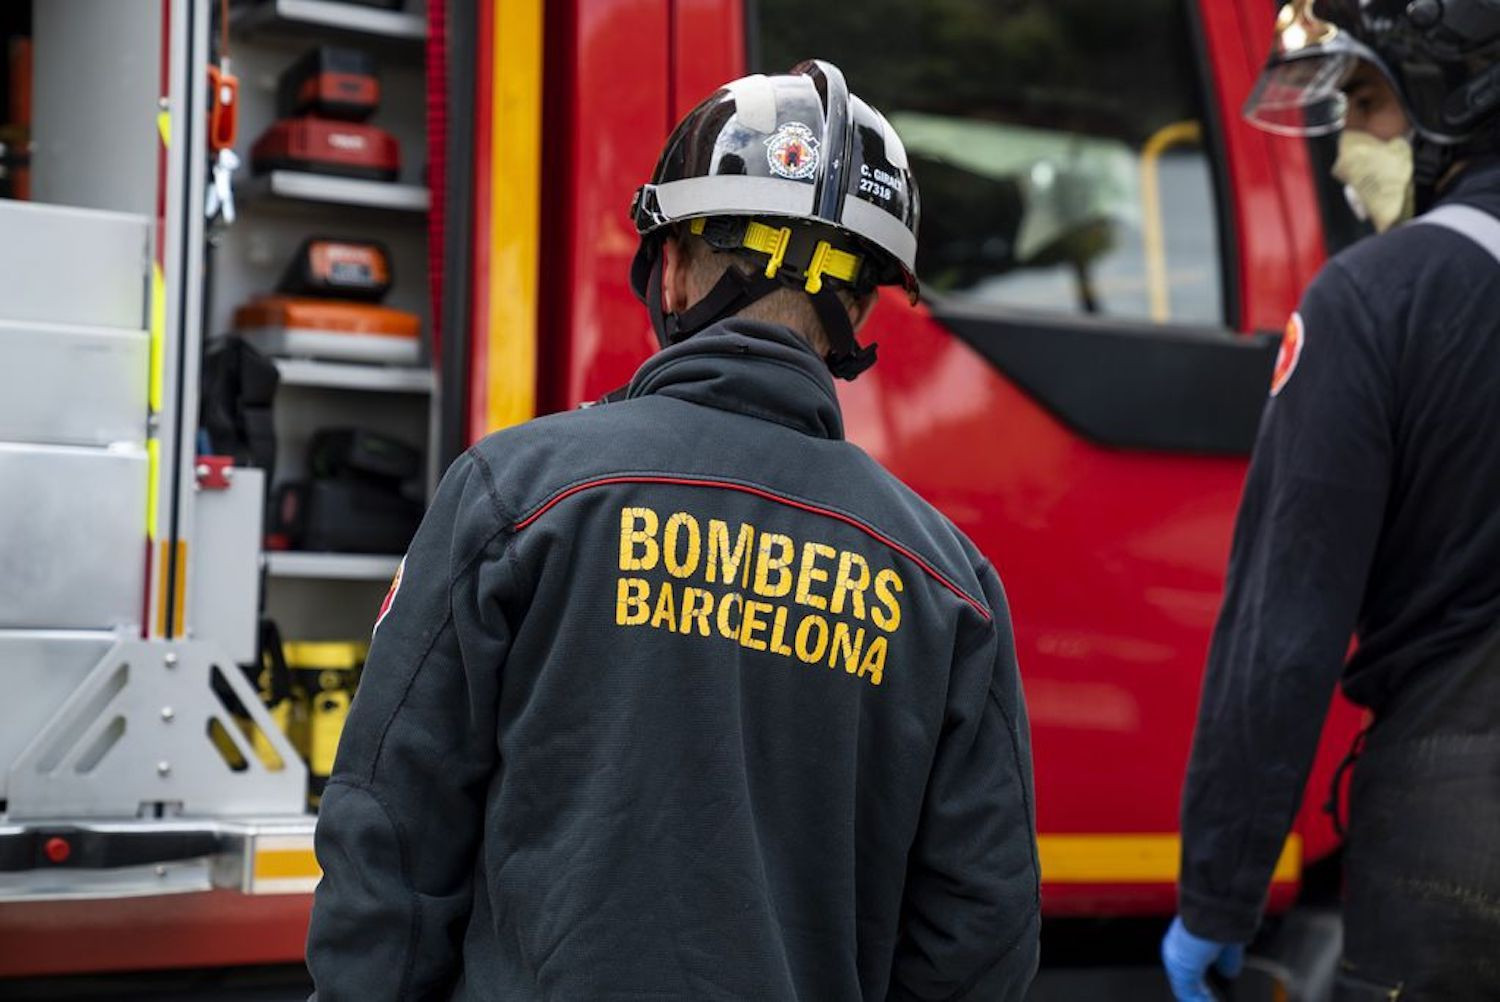 Bomberos de Barcelona en una imagen de archivo / AYUNTAMIENTO DE BARCELONA